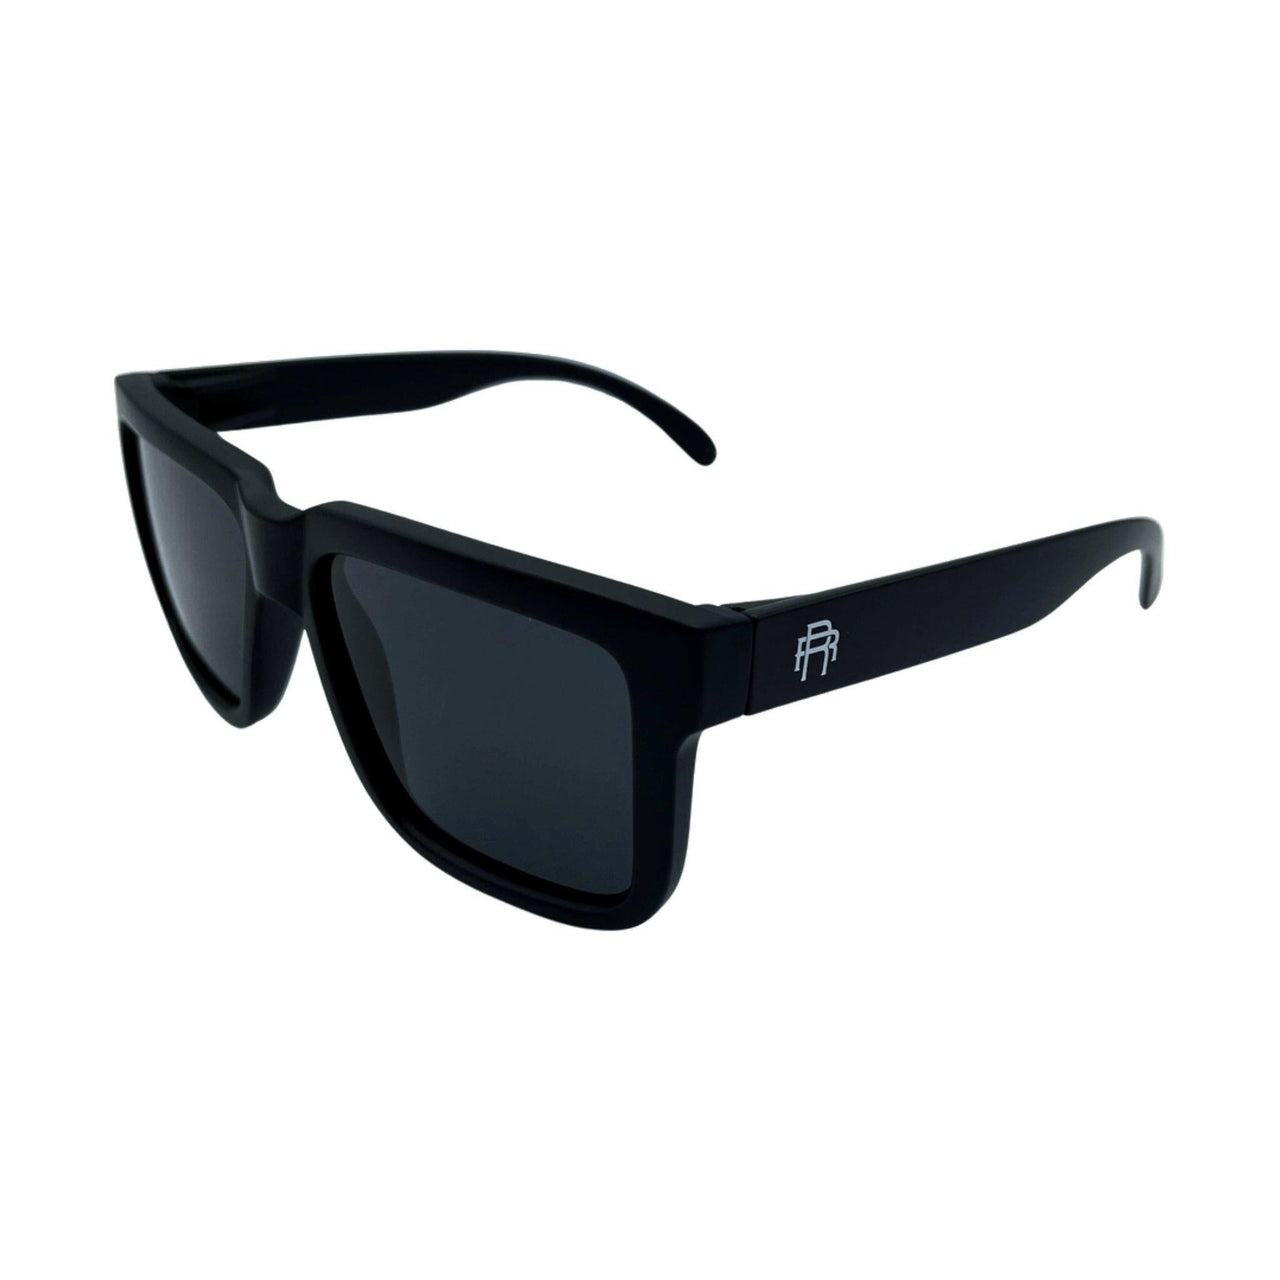 Dillinger Black Polarized Lens Sunglasses